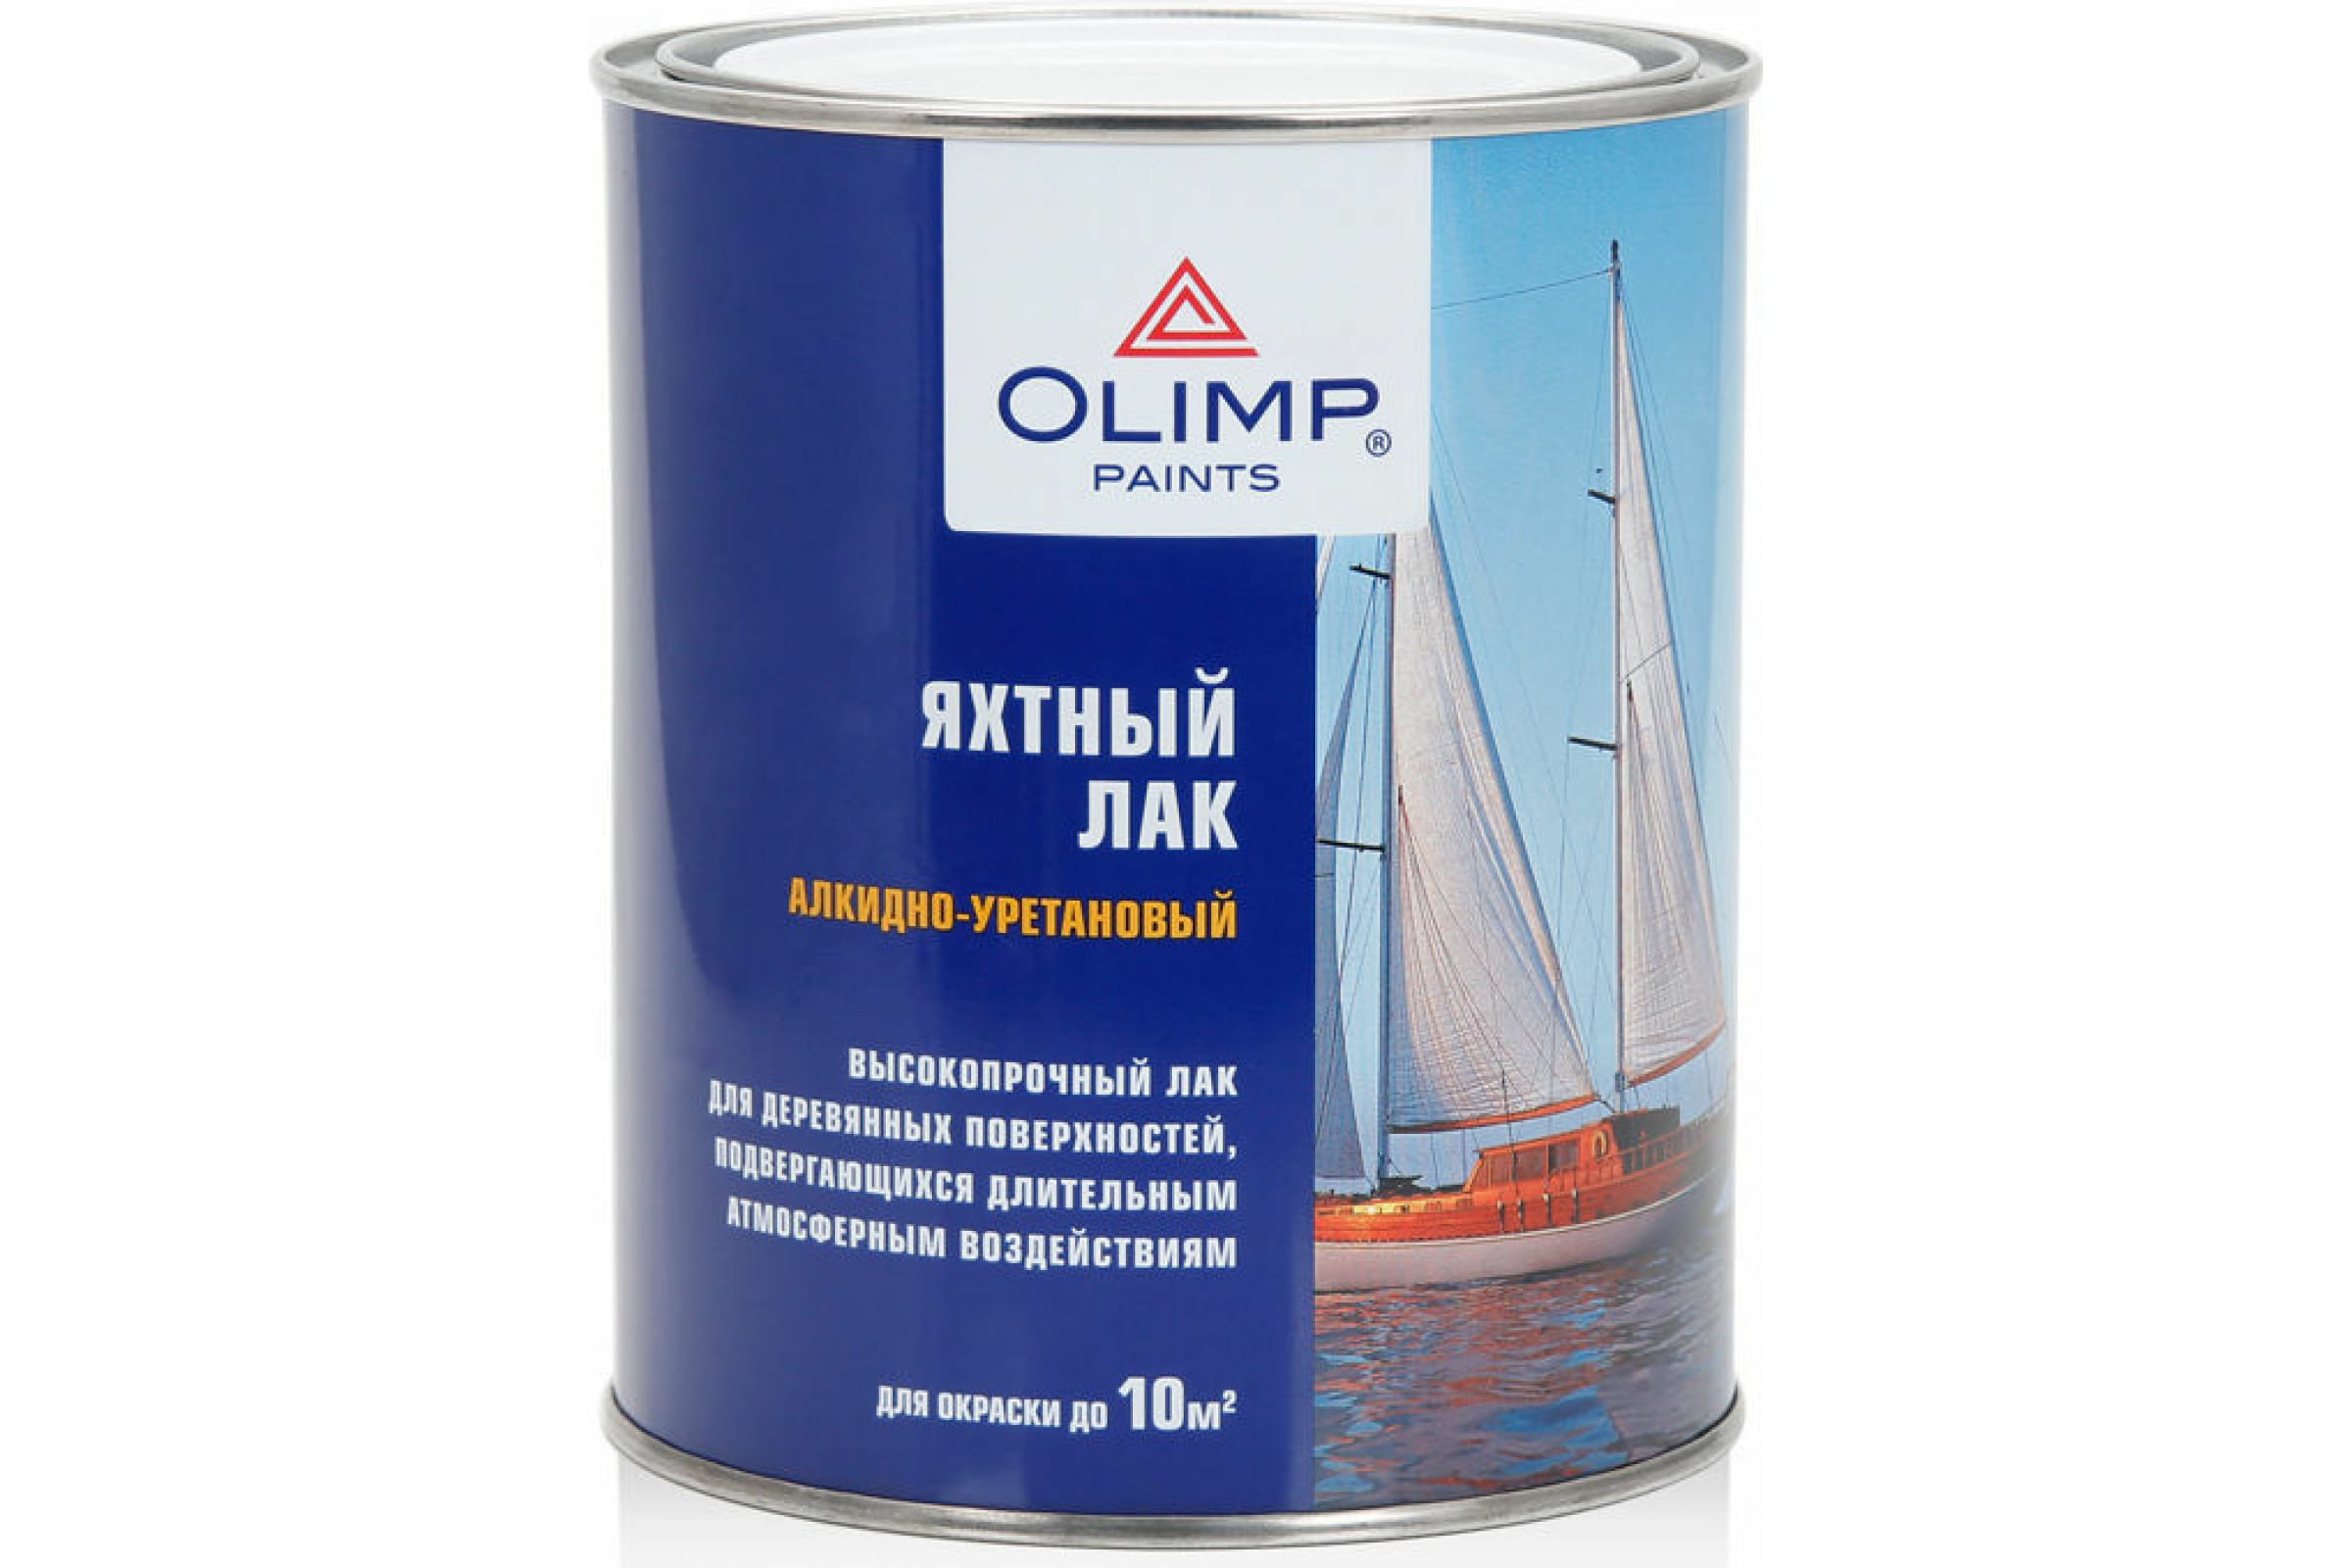 фото Лак olimp яхтный, полуматовый, 900 мл